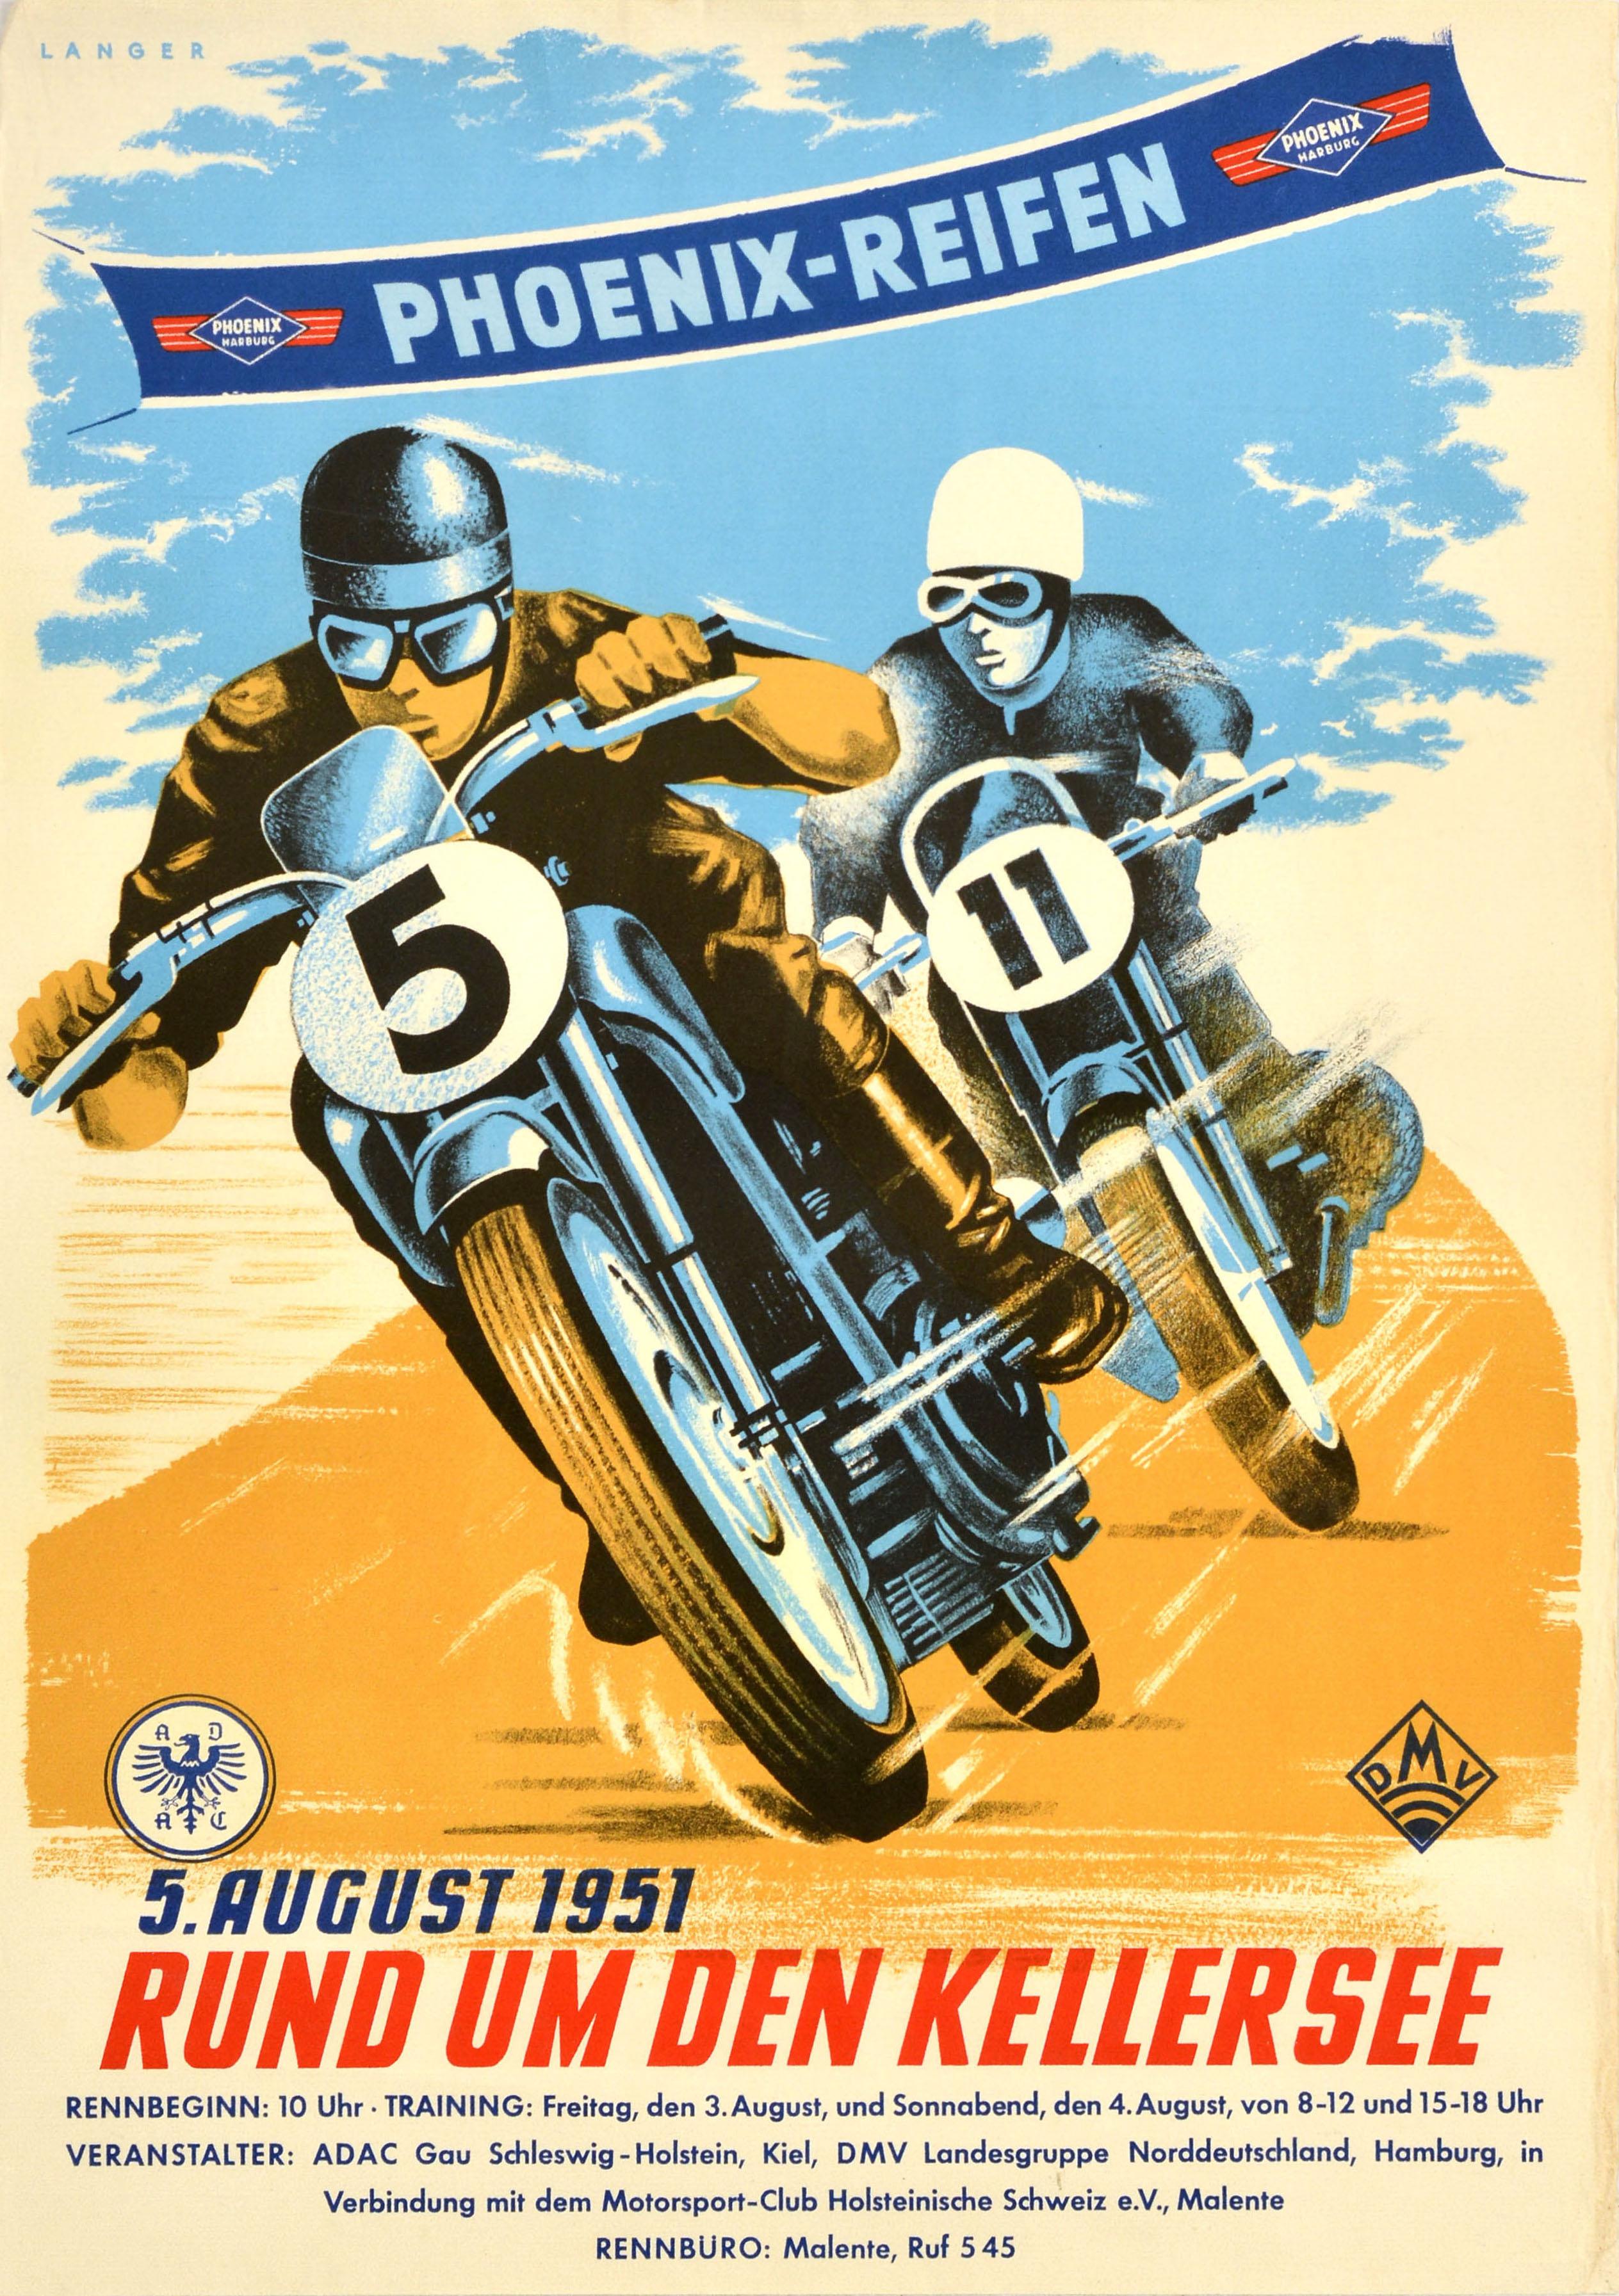 Unknown Print - Original Vintage Motorsport Poster Motorcycle Race Phoenix Reifen 1951 Kellersee